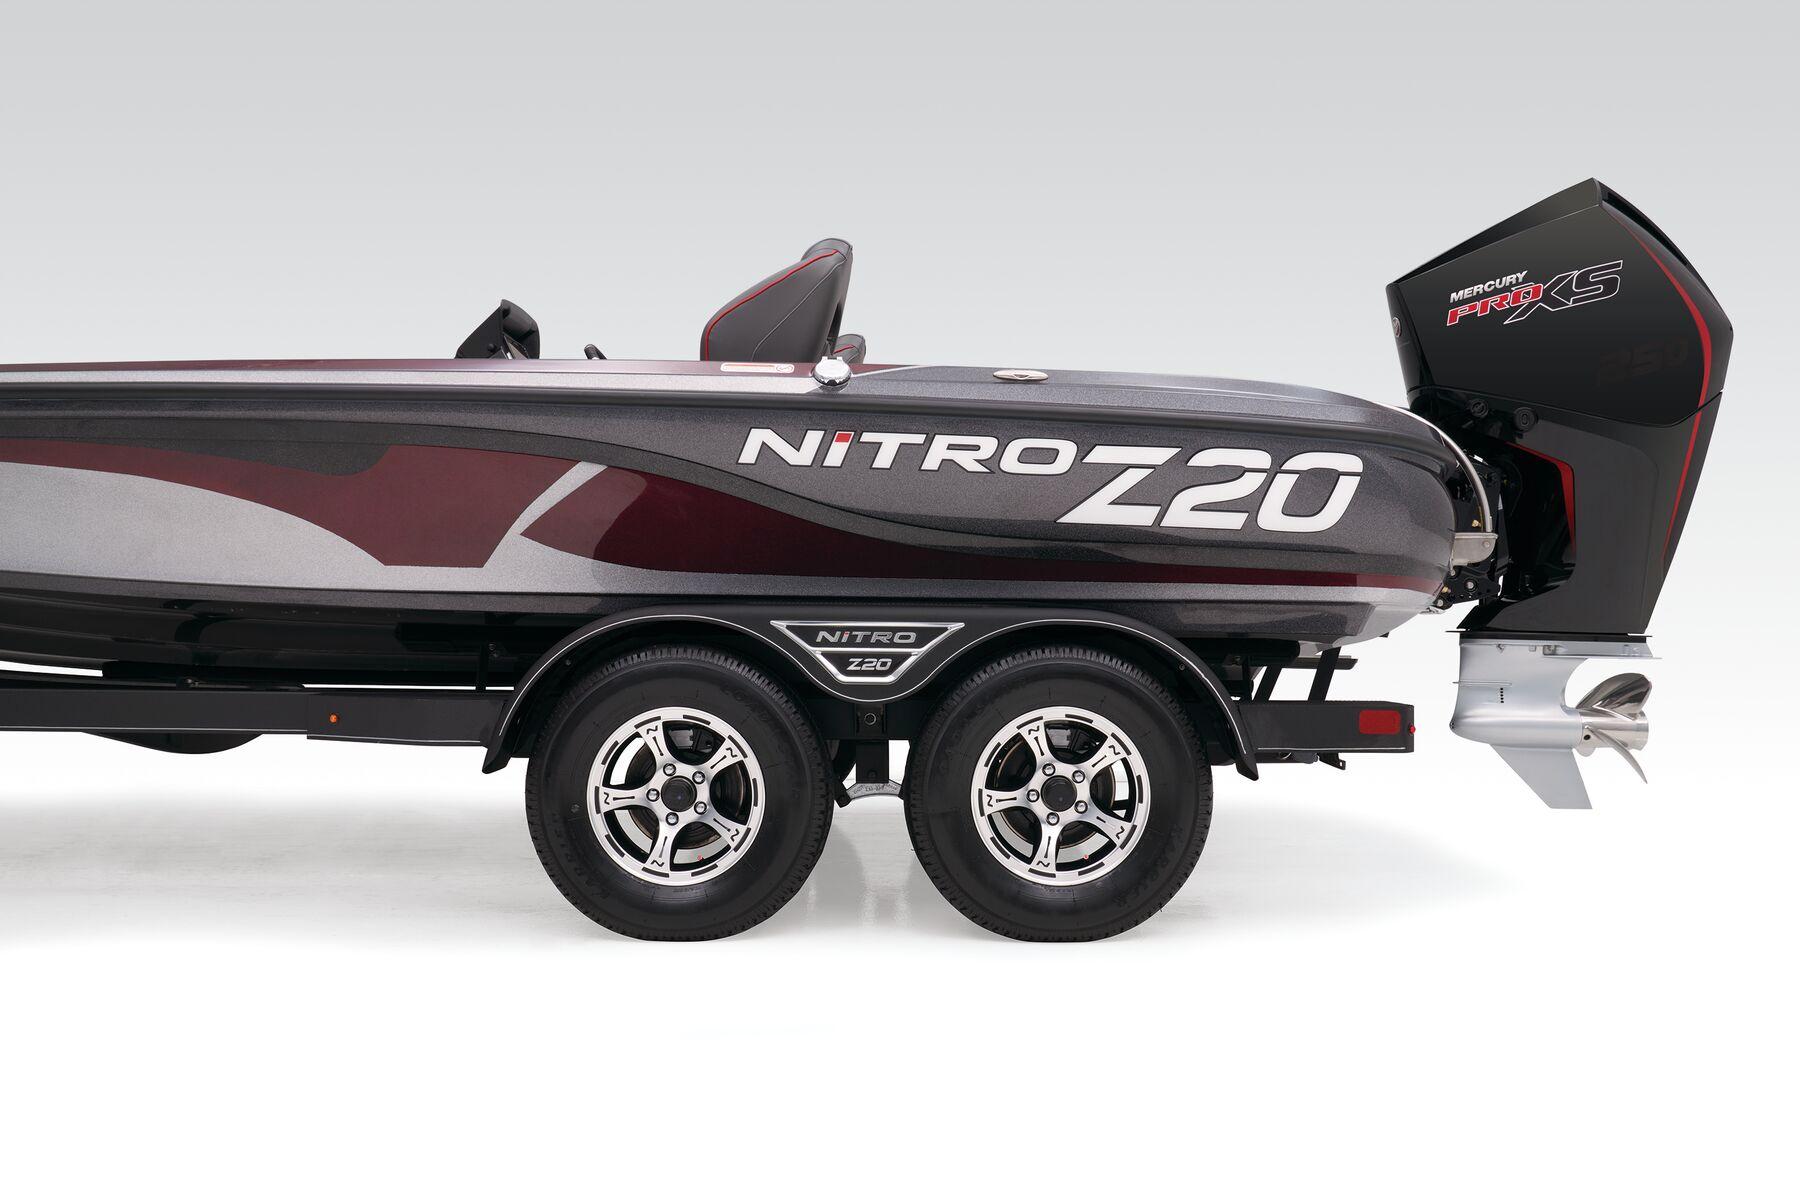 Nitro Z20 Pro